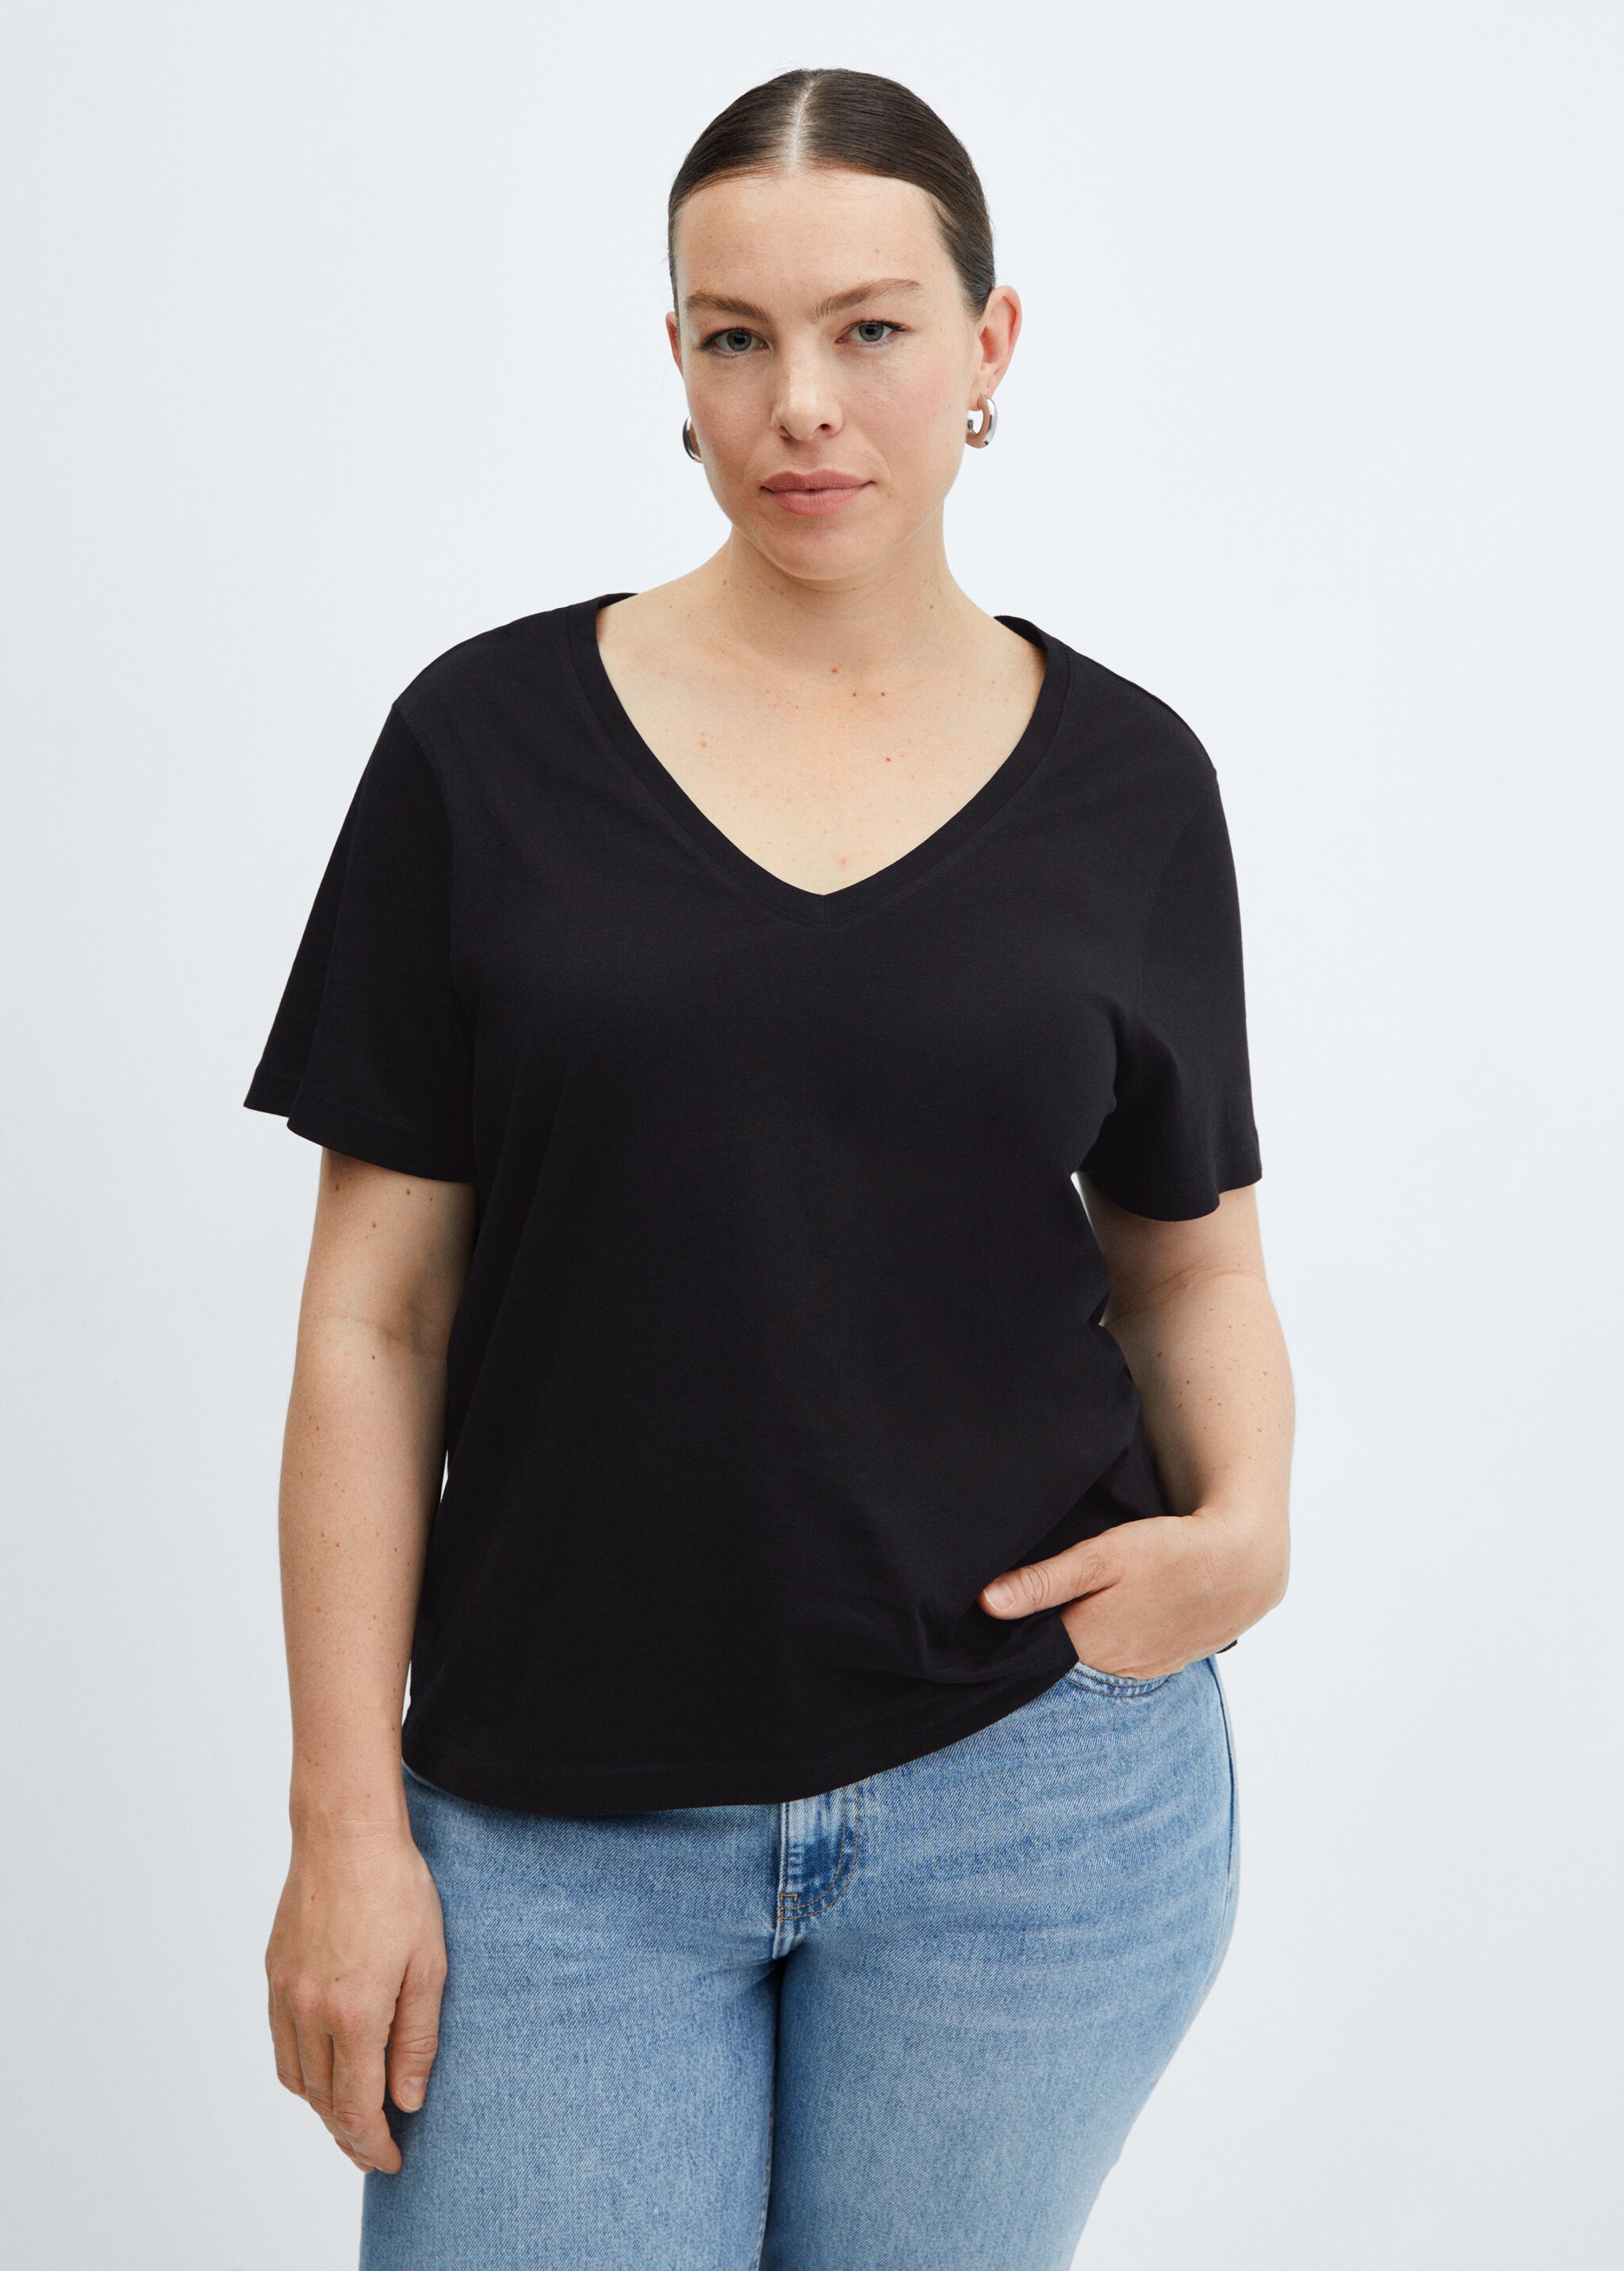 Camiseta cuello pico 100% algodón - Detalle del artículo 5